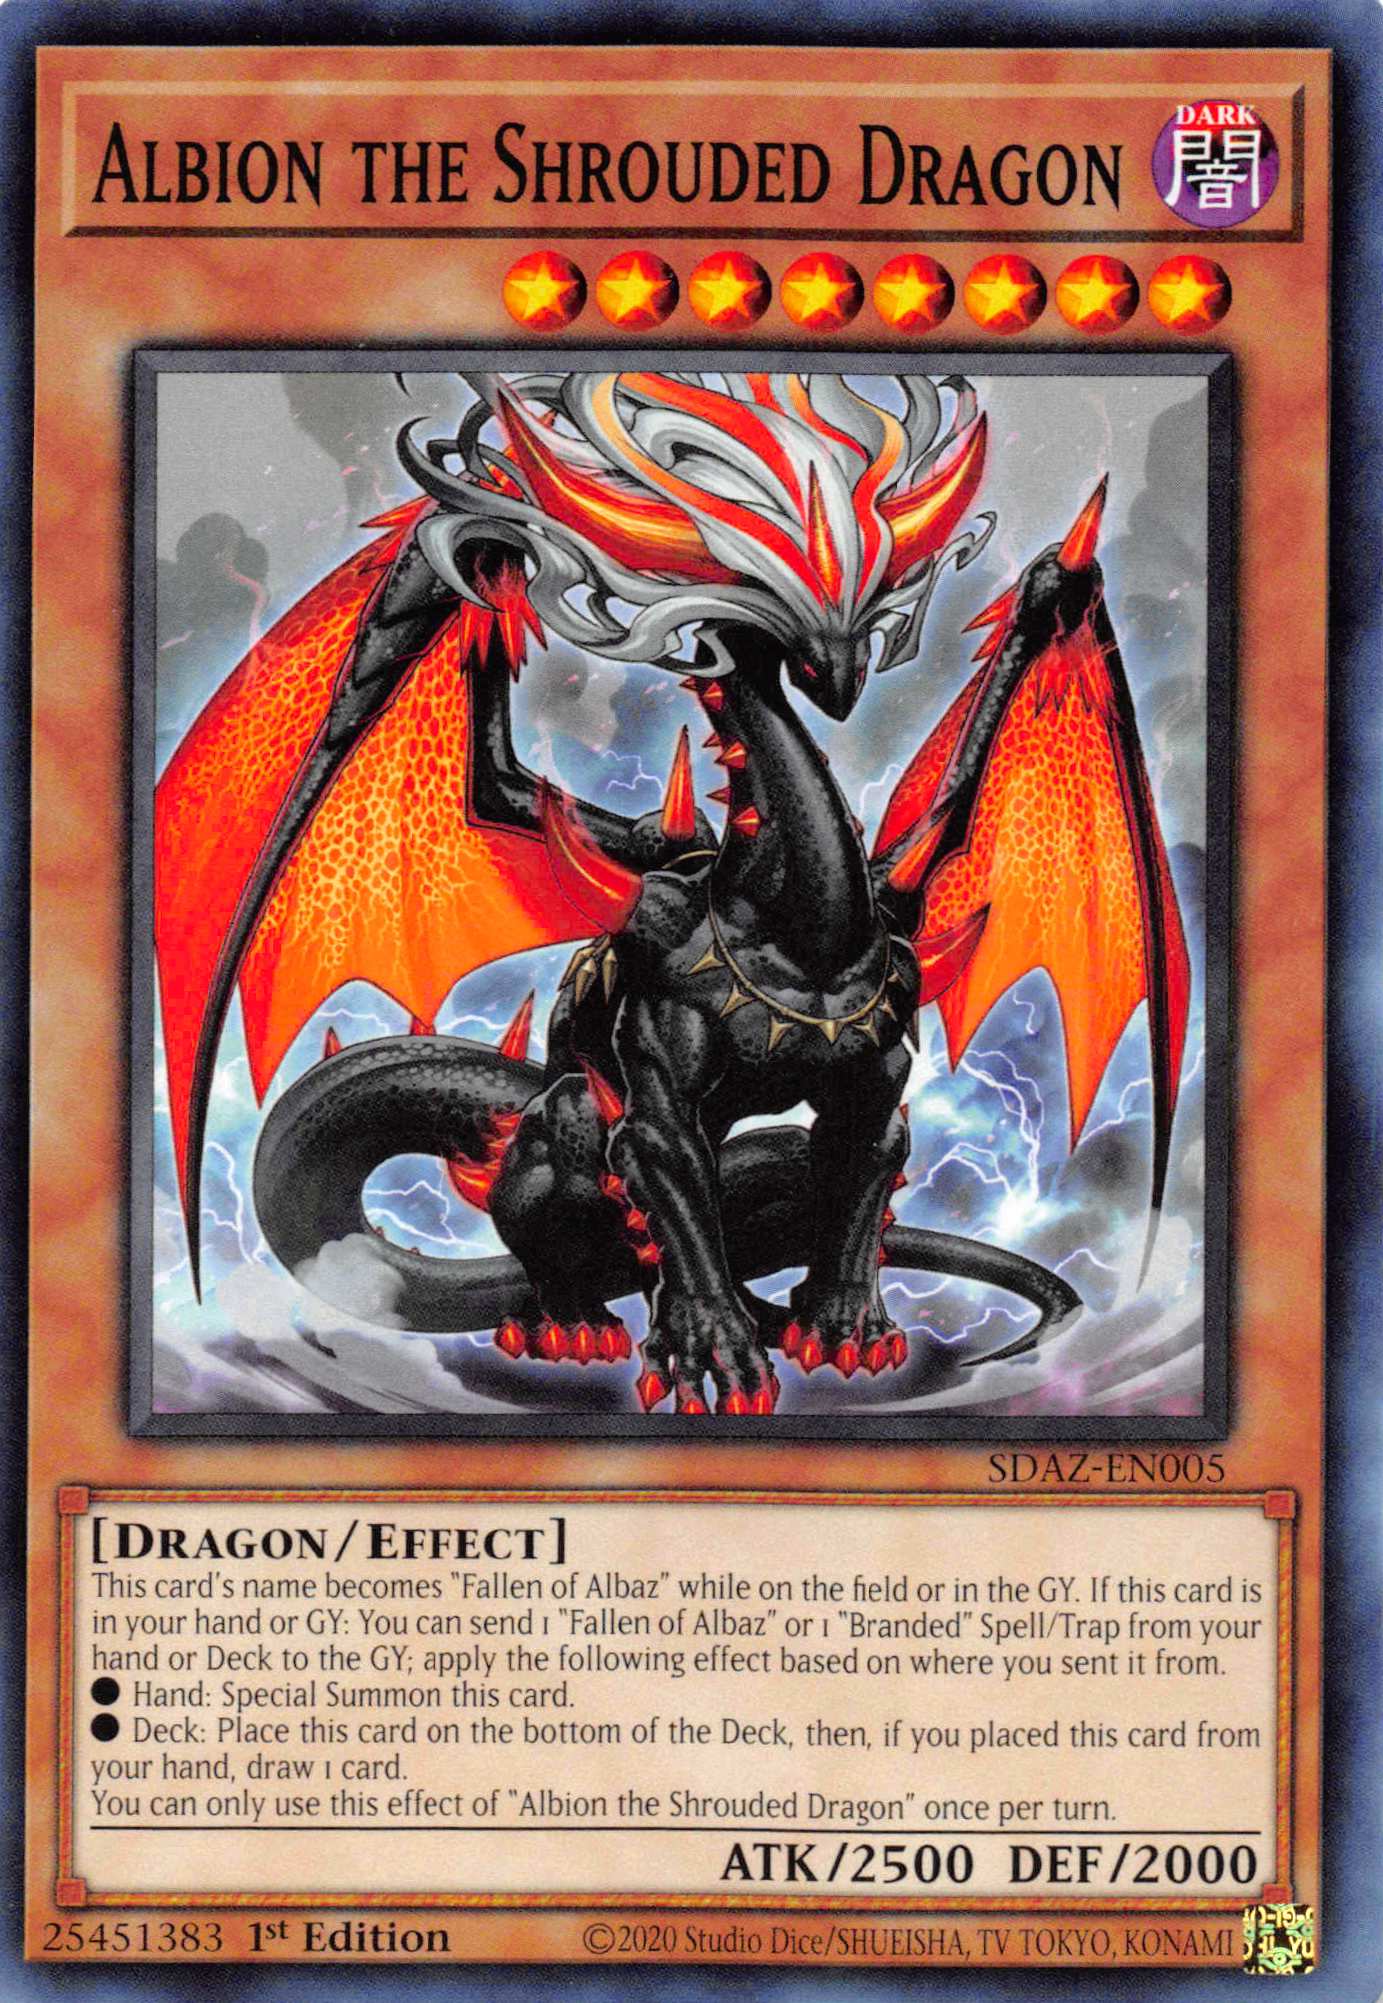 Albion the Shrouded Dragon [SDAZ-EN005] Common | Exor Games Summserside